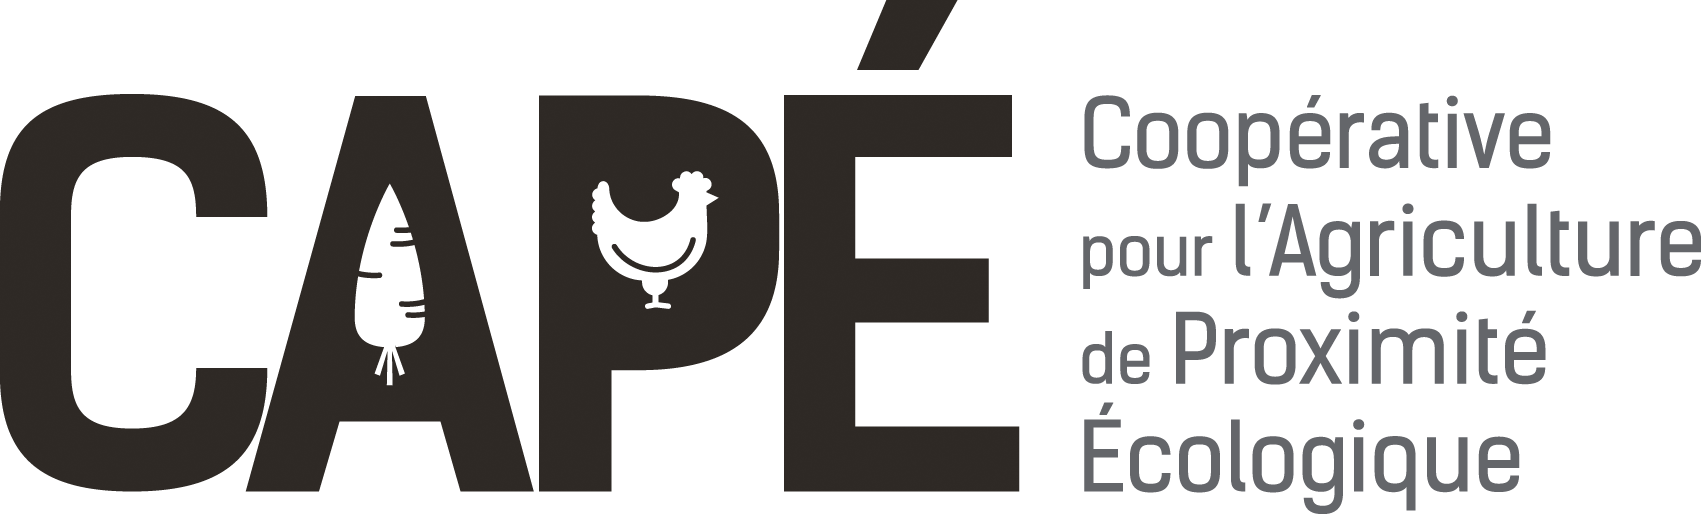 CAPÉ (Coopérative de l'Agriculture de Proximité Écologique)